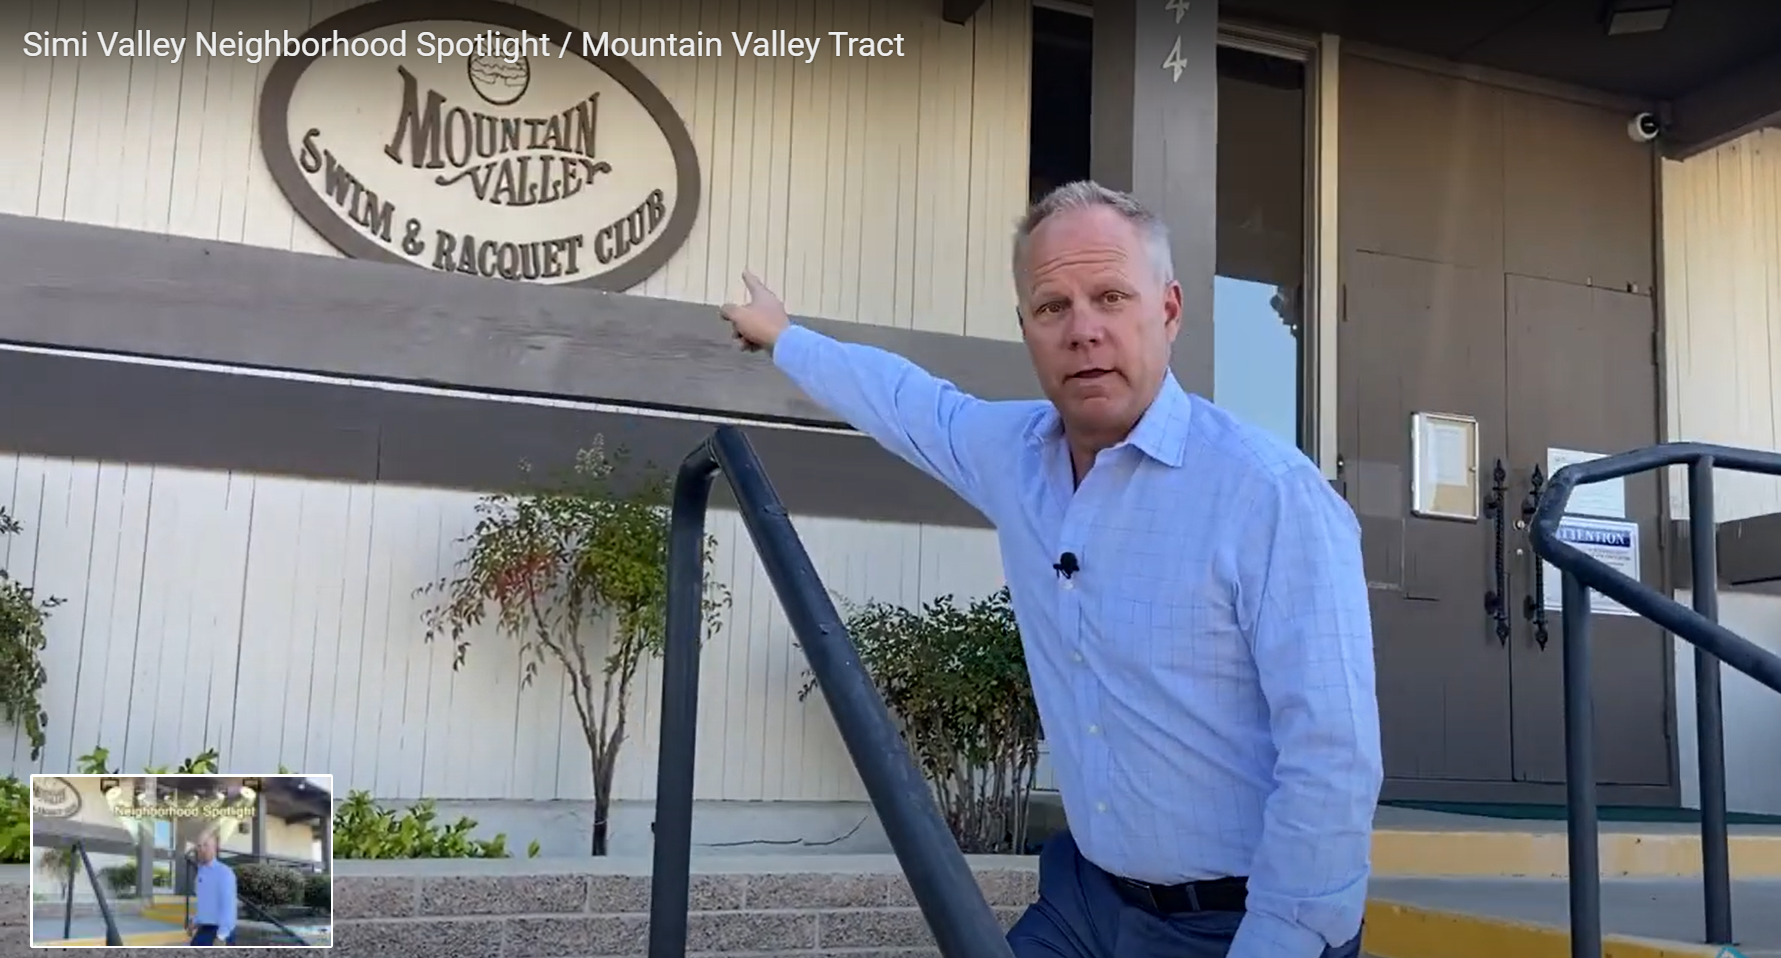 Simi Valley Neighborhood Spotlight / Mountain Valley Tract